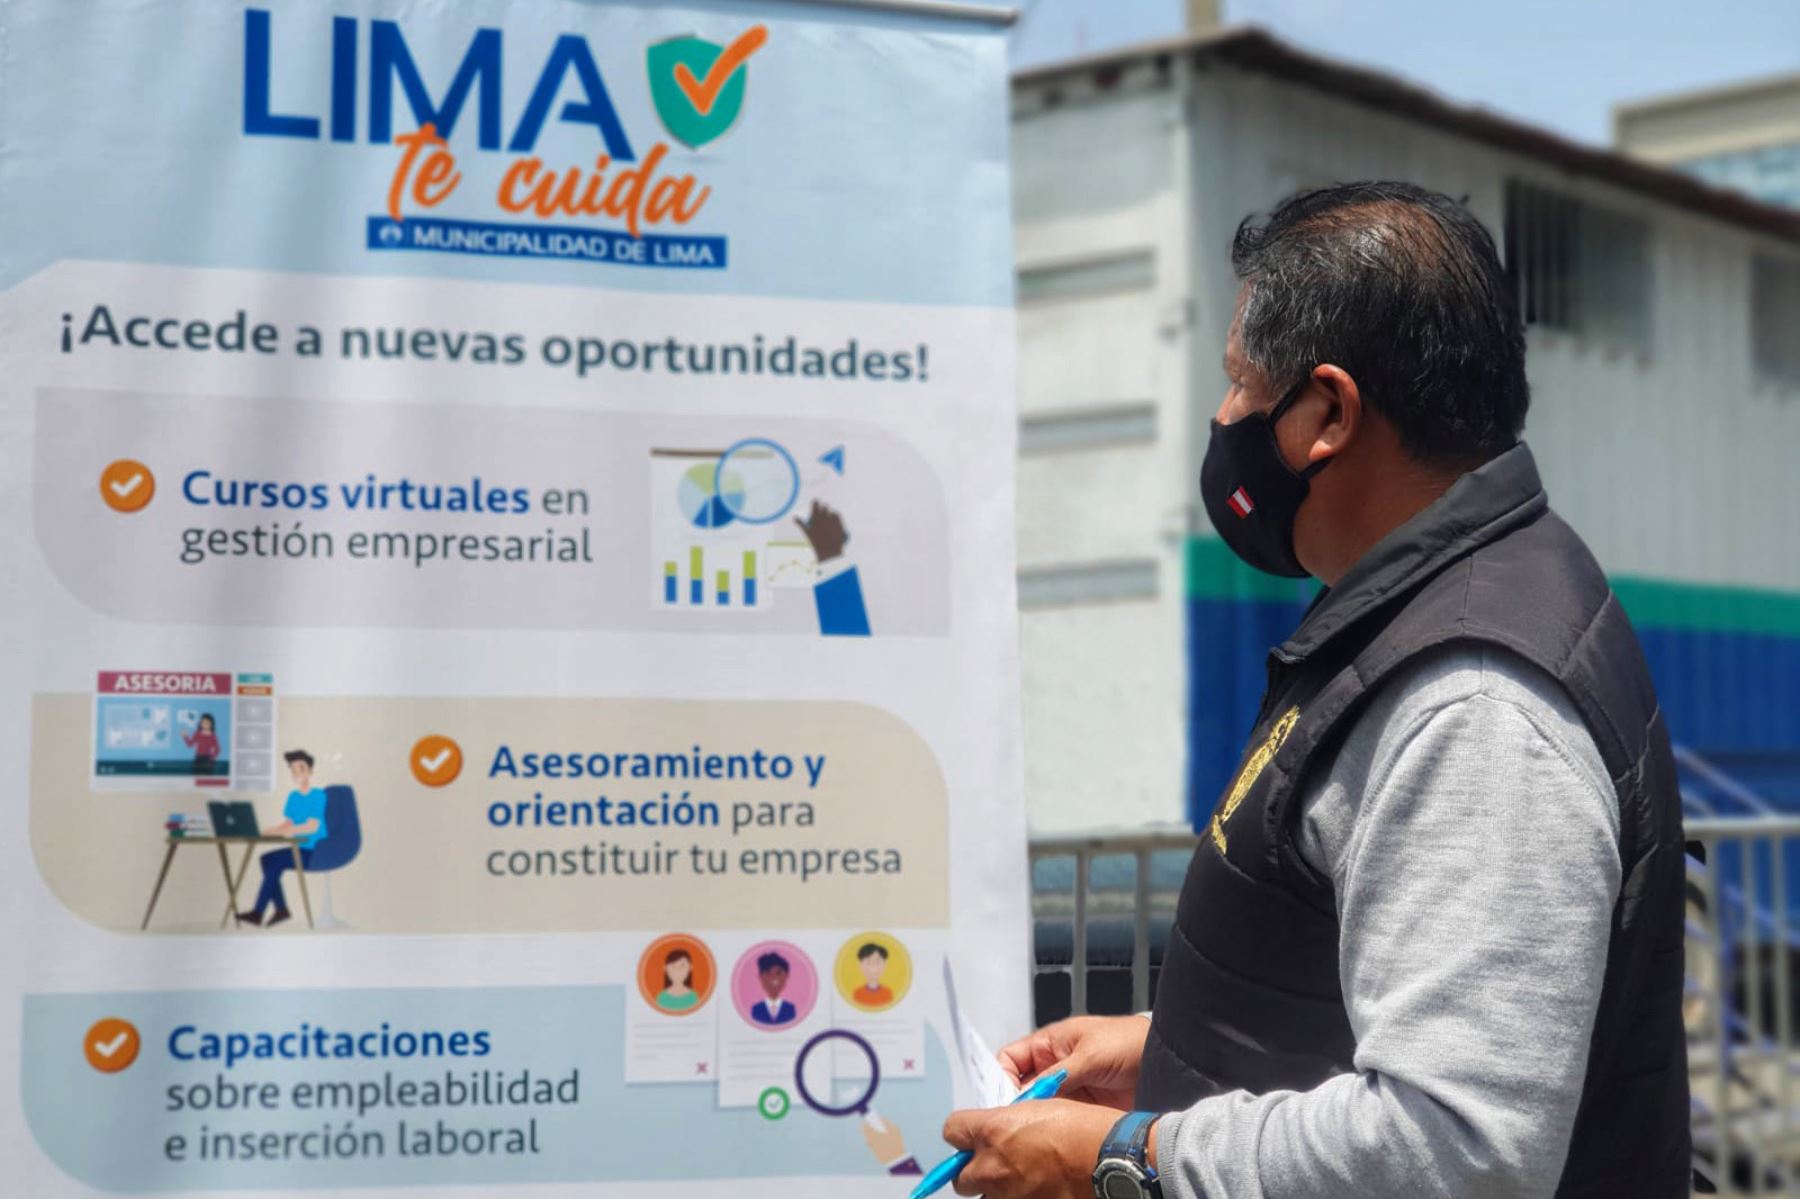 Como parte de la estrategia de atención territorial Lima te Cuida, la municipalidad implementó dos módulos informativos en la plaza Gastañeta para que los ambulantes conozcan estas opciones de crecimiento laboral. Foto: ANDINA/Municipalidad Metropolitana de Lima.